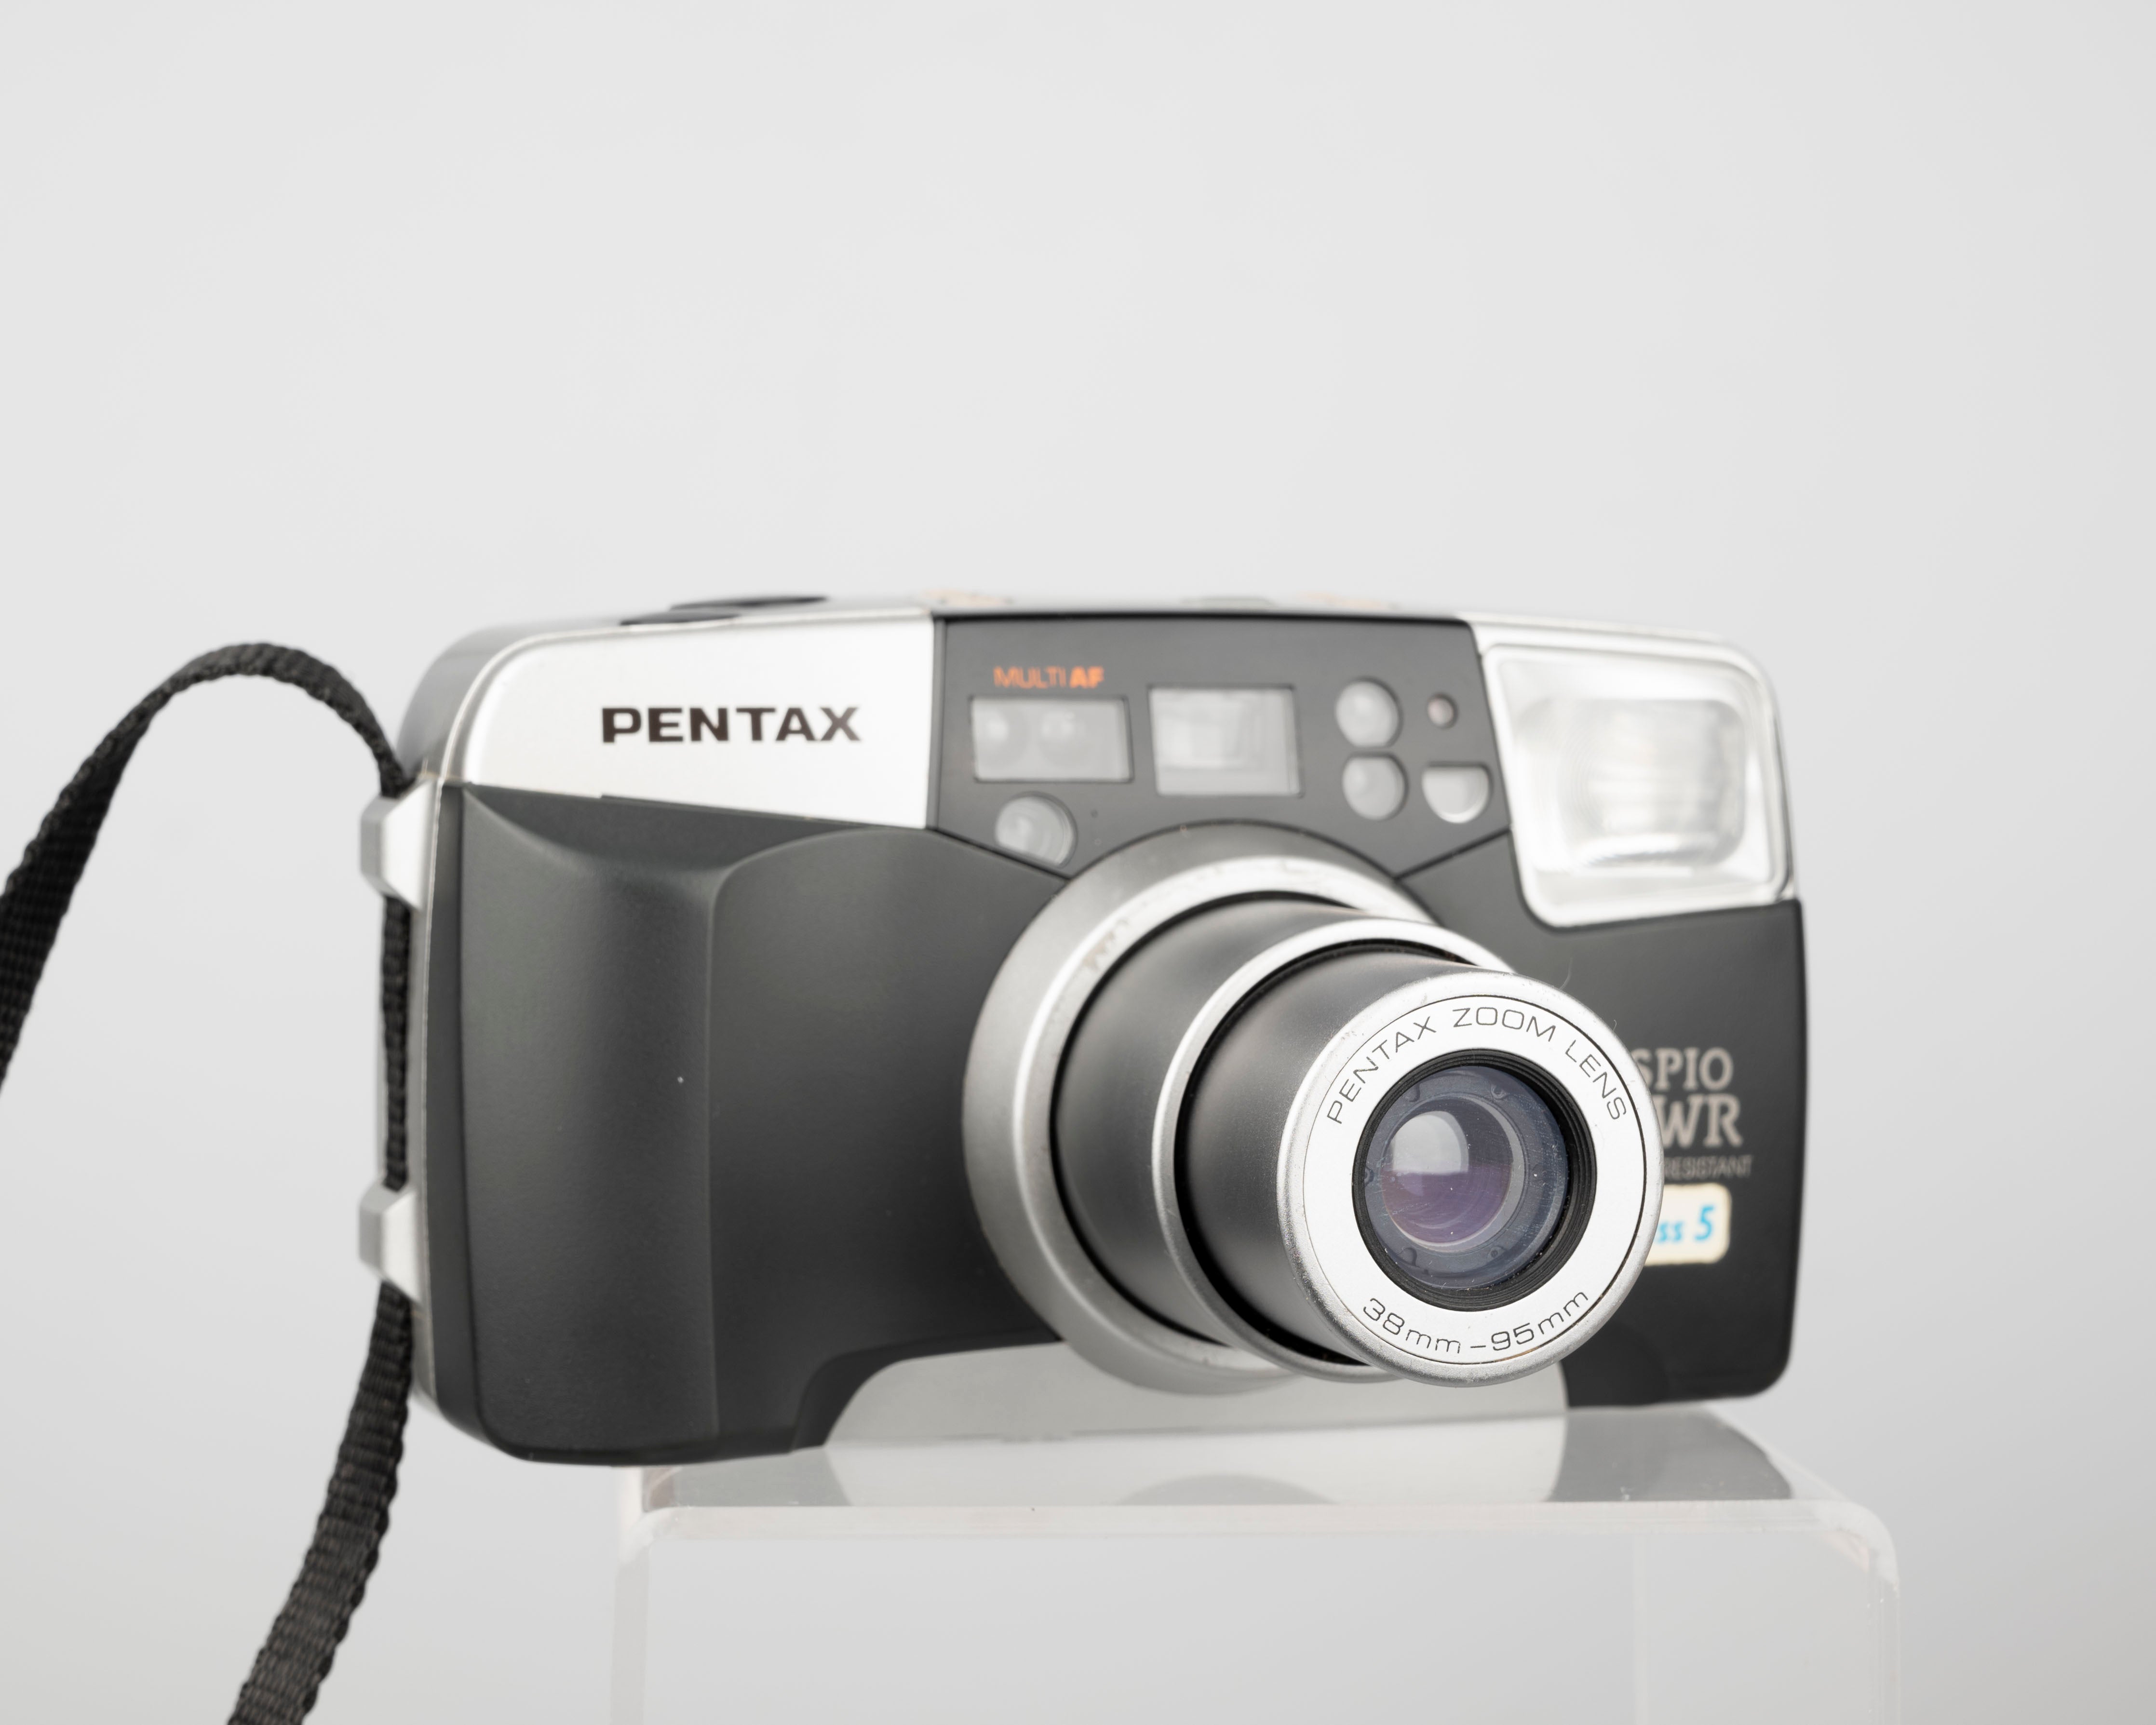 Pentax Espio 95WR 35mm camera w/ original box and manual (serial